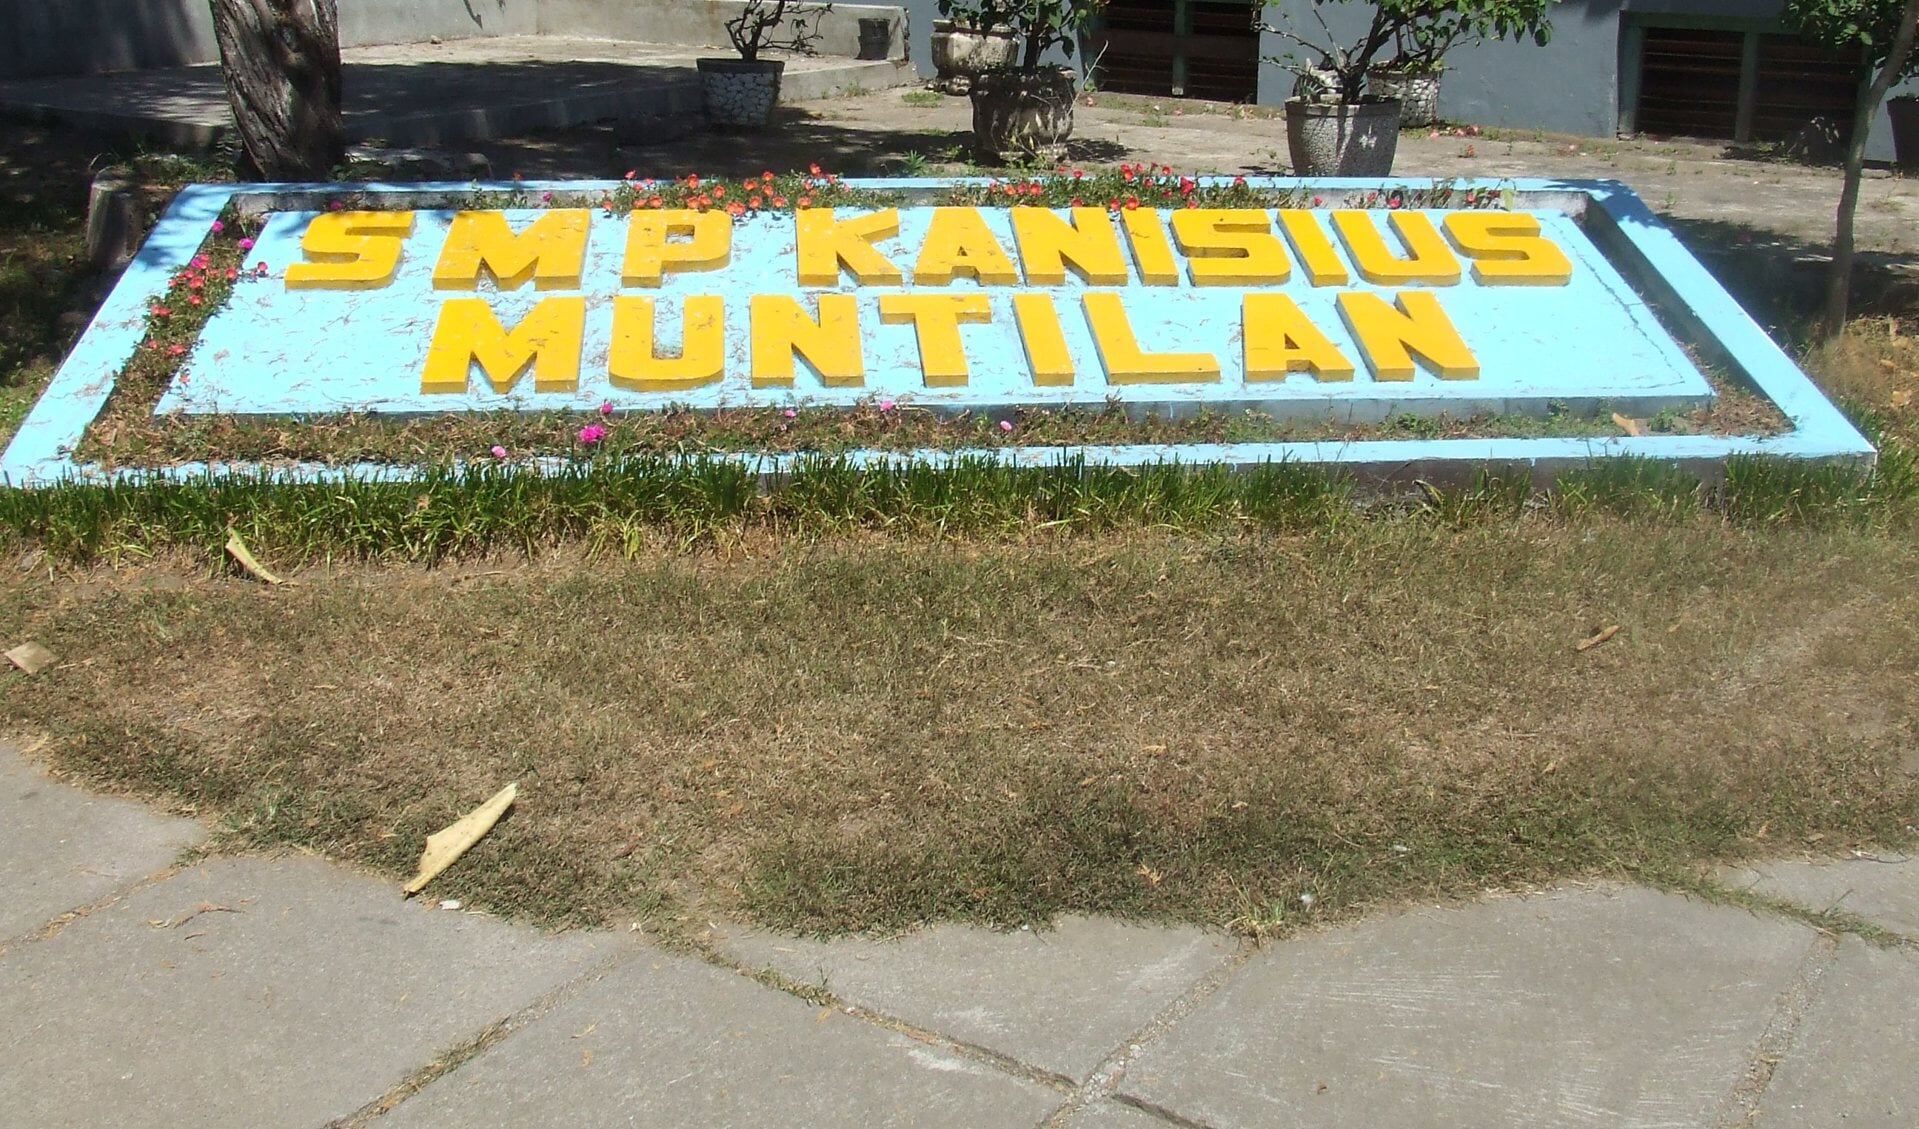 De basisschool Kanisius in Moentilan.